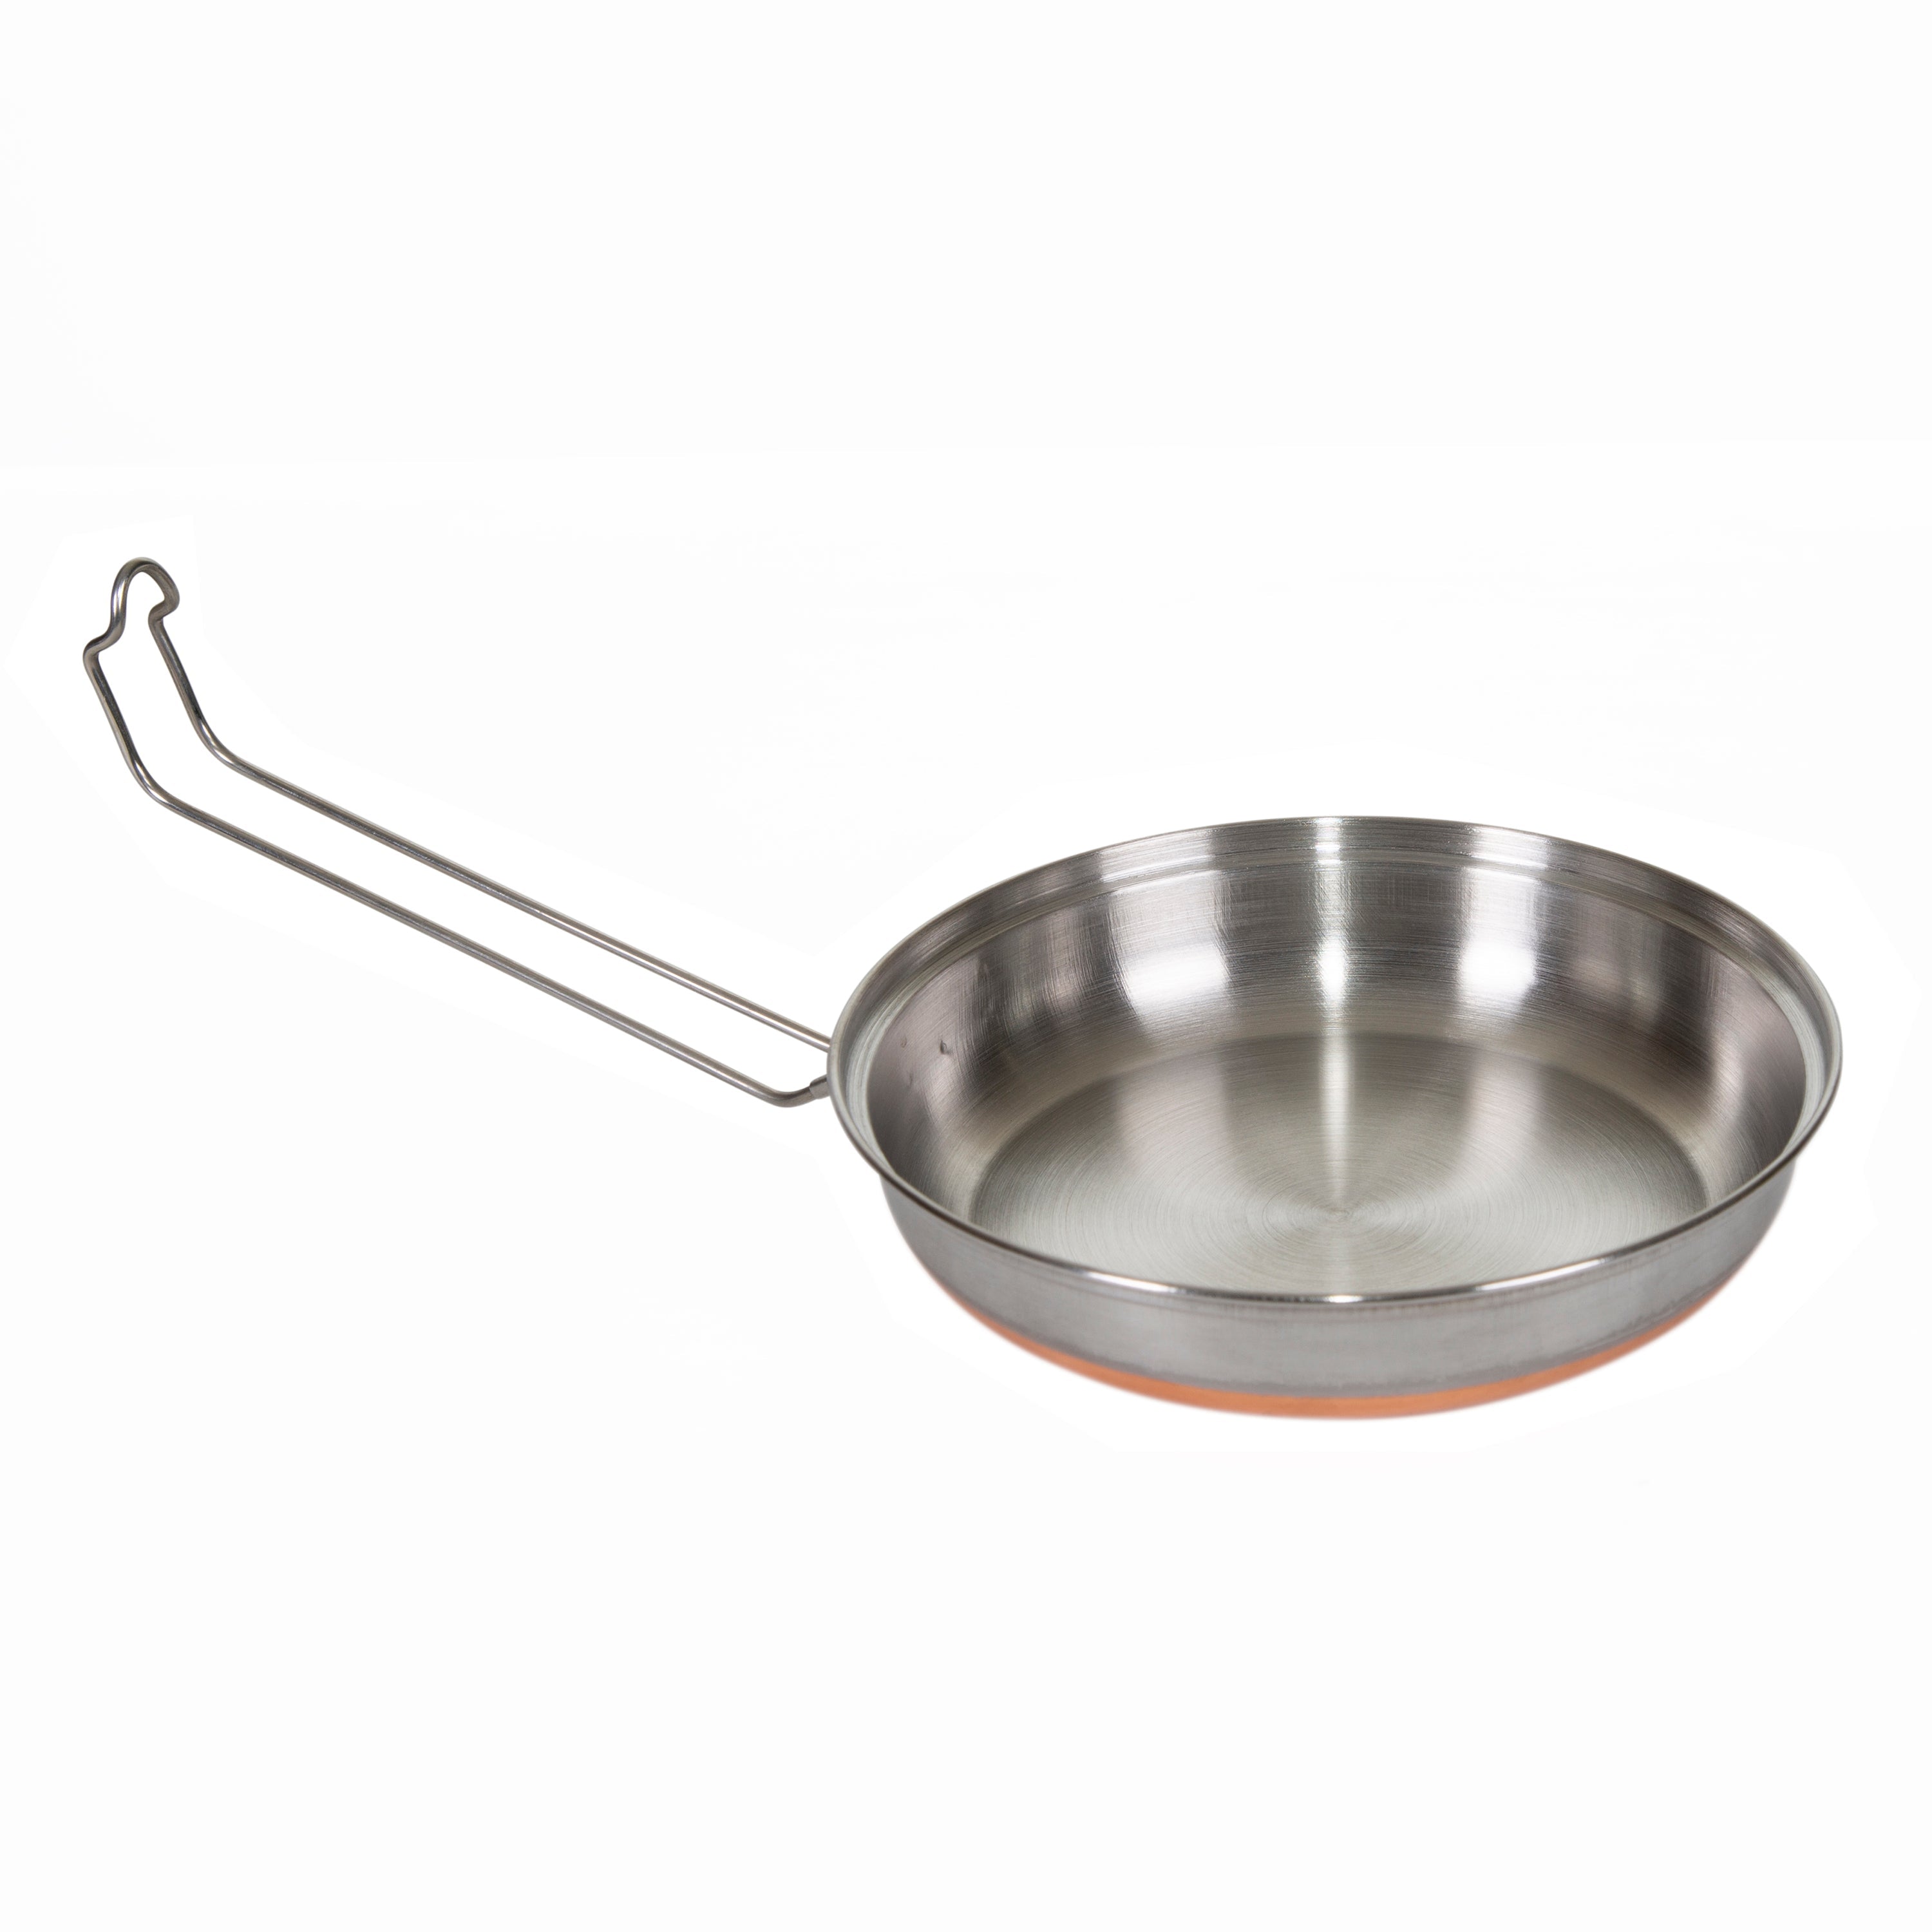 Stainless Steel Mess Kit - 1 Pan, 1 Saucepan, 1 Plate